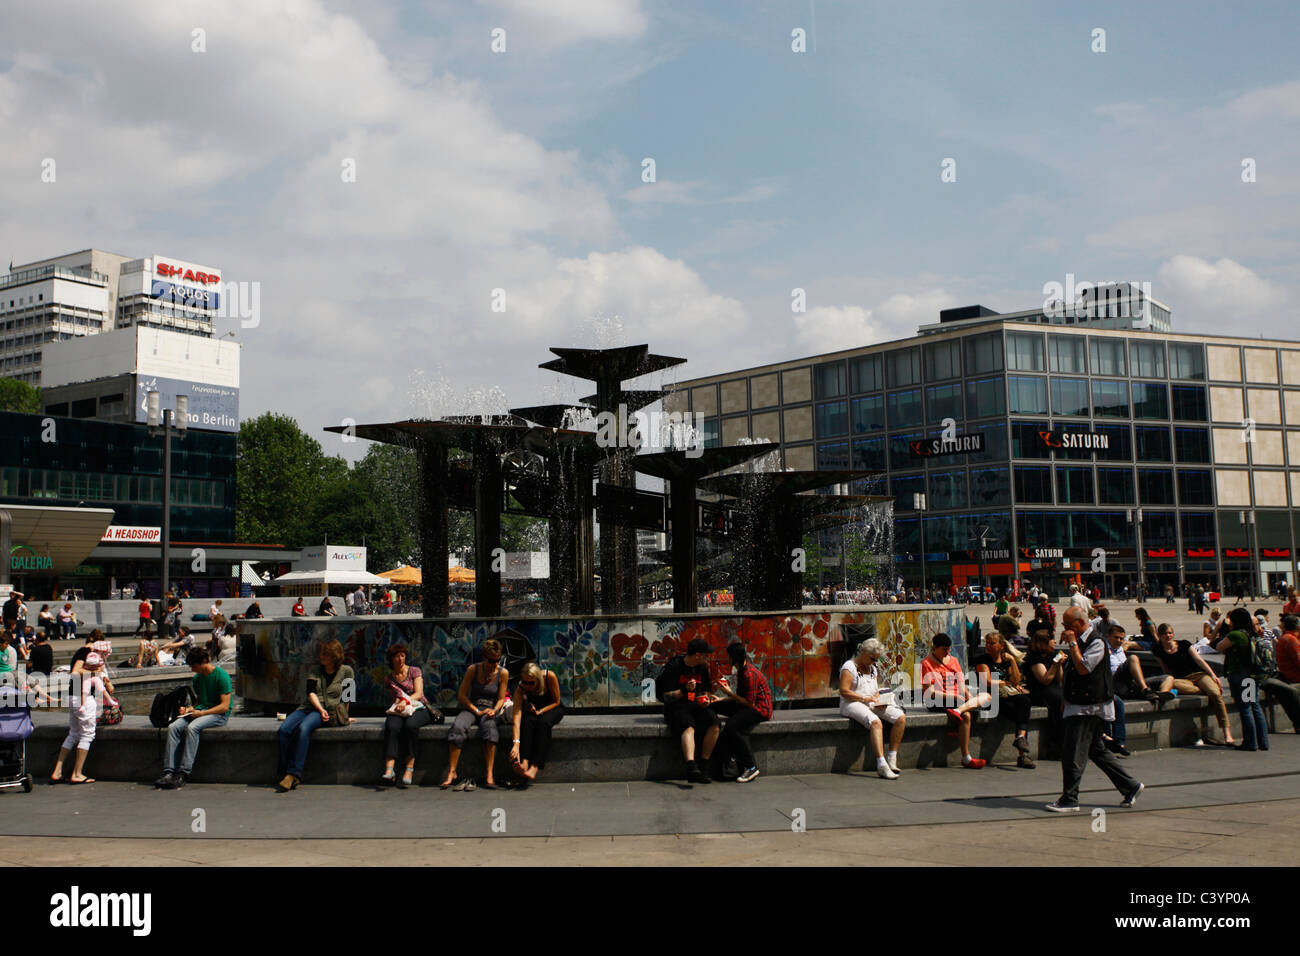 La gente se sienta alrededor de la Fuente de la 'Amistad del Pueblo' diseñada por Walter Womacka (1970) situada en la plaza pública Alexanderplatz en el distrito central de Mitte de Berlín, Alemania Foto de stock